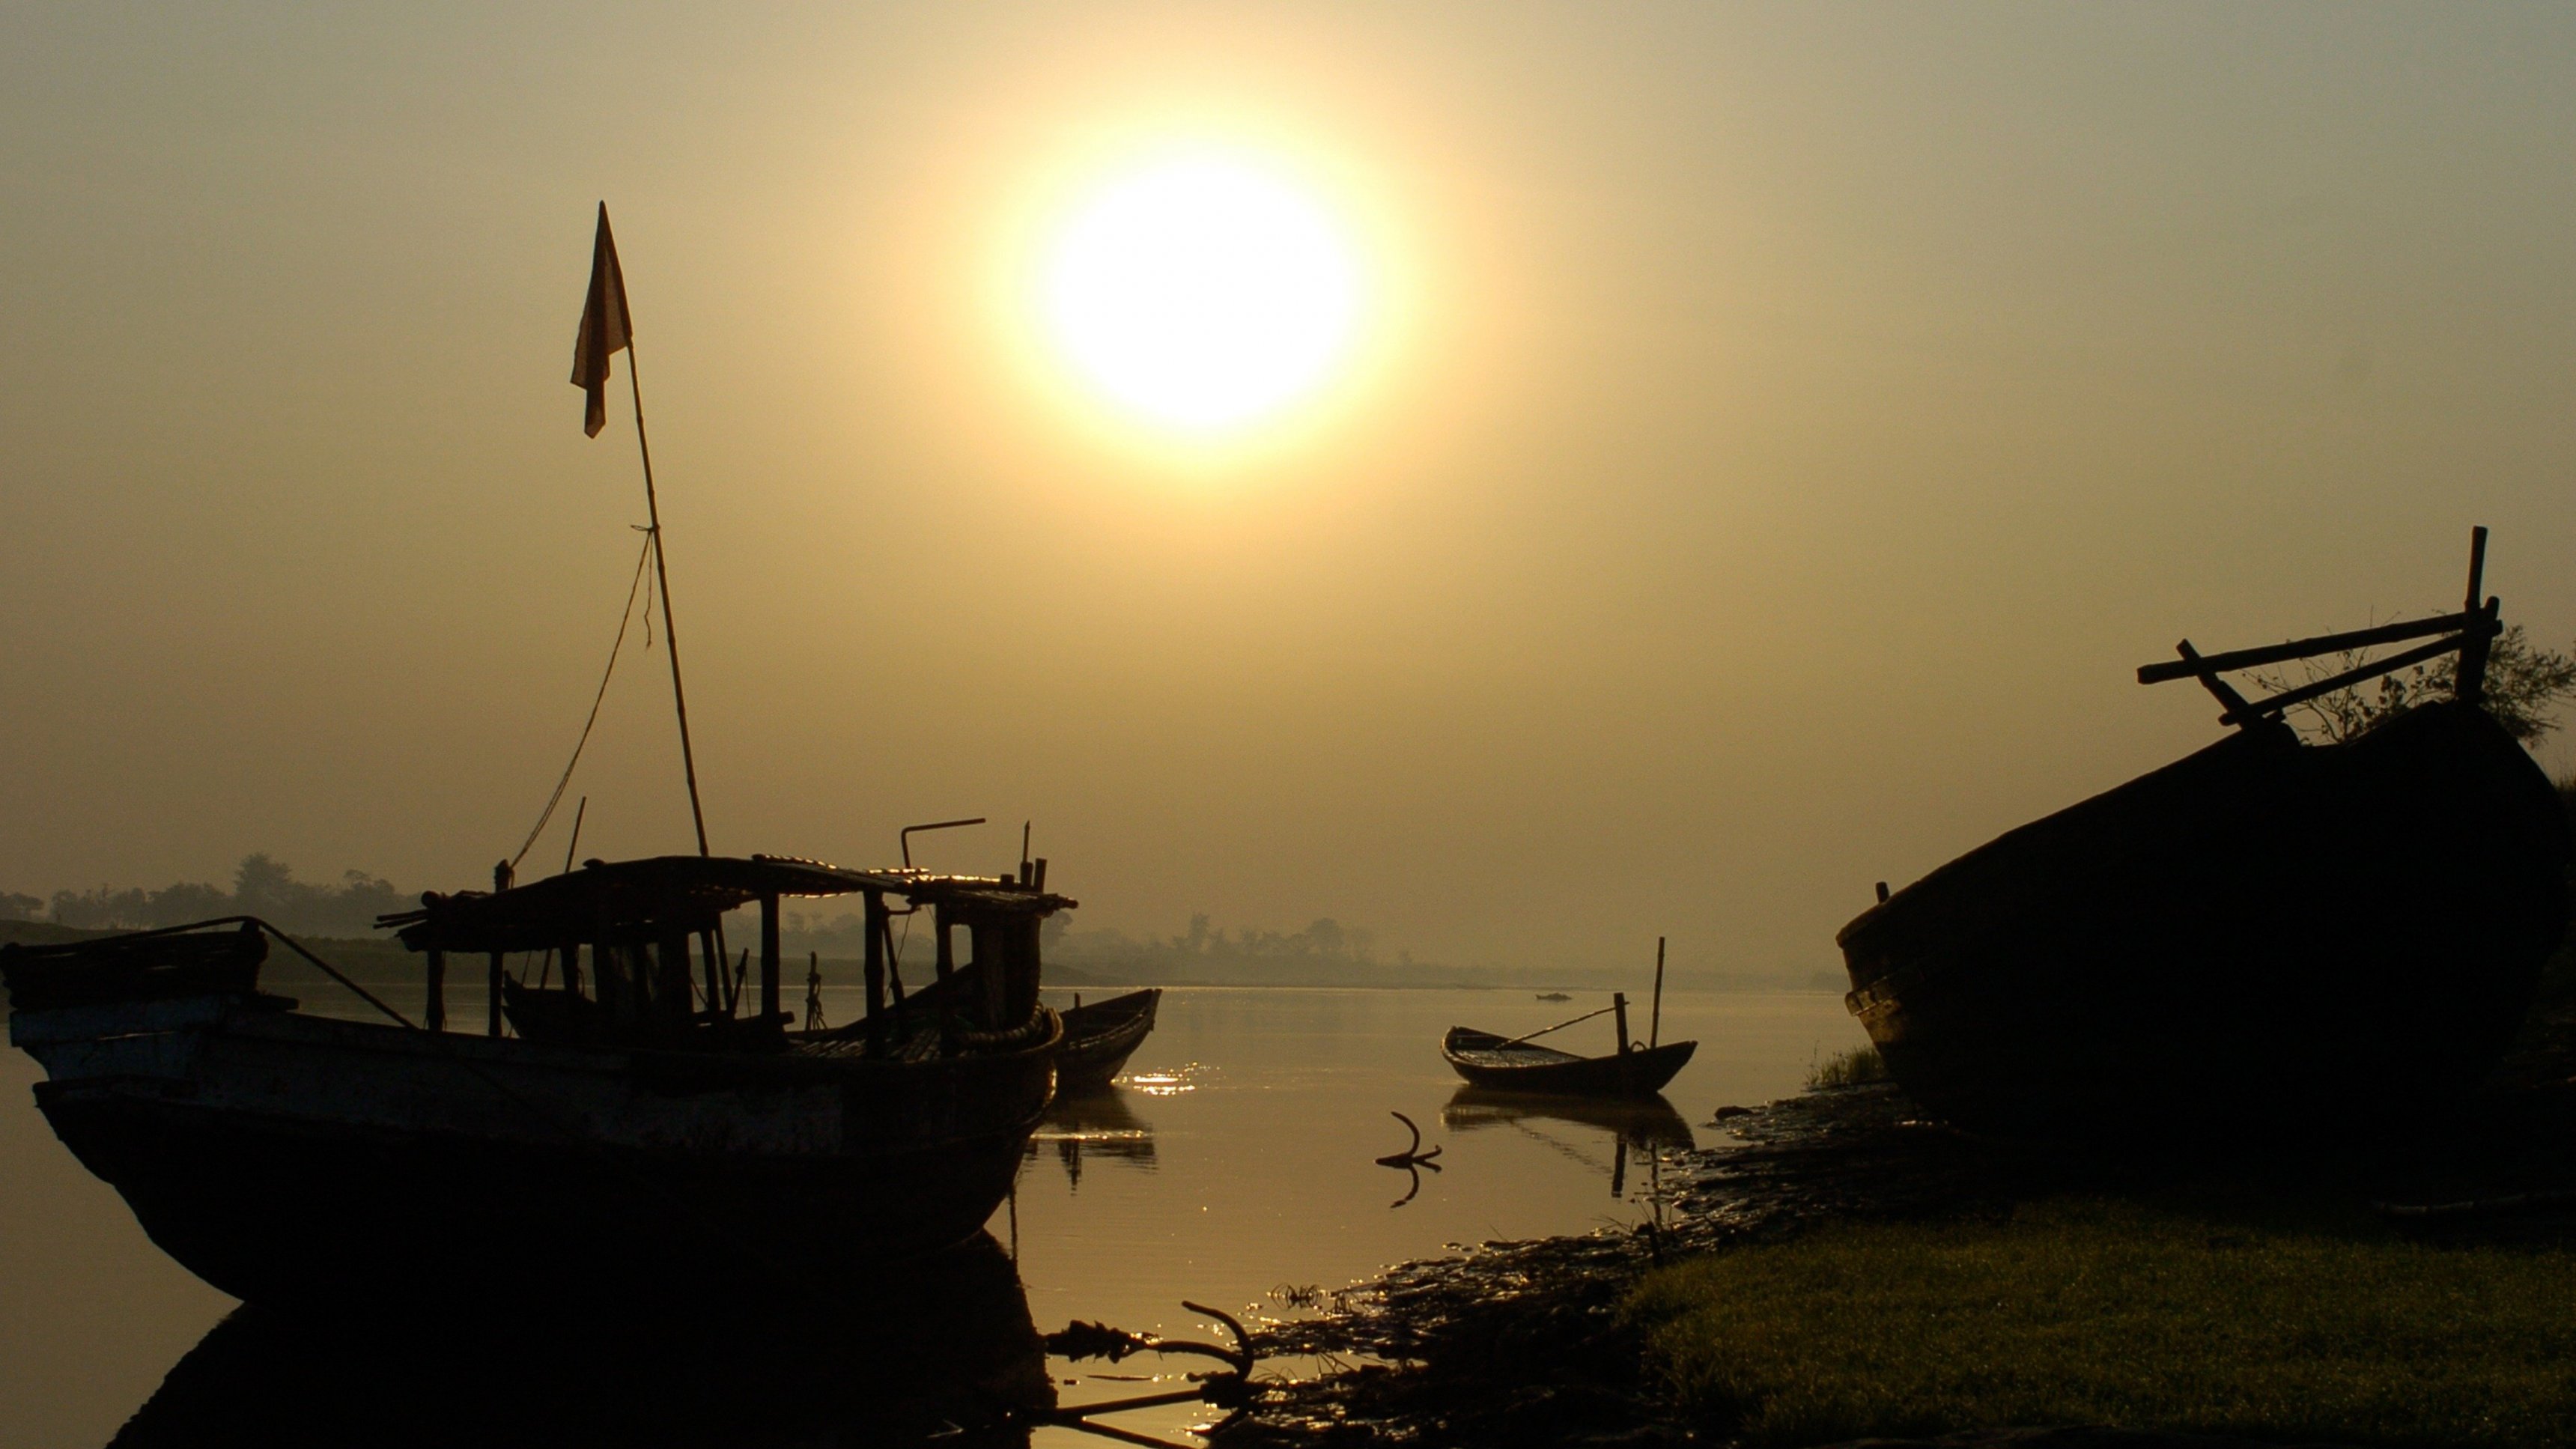 Ganges: River of Life